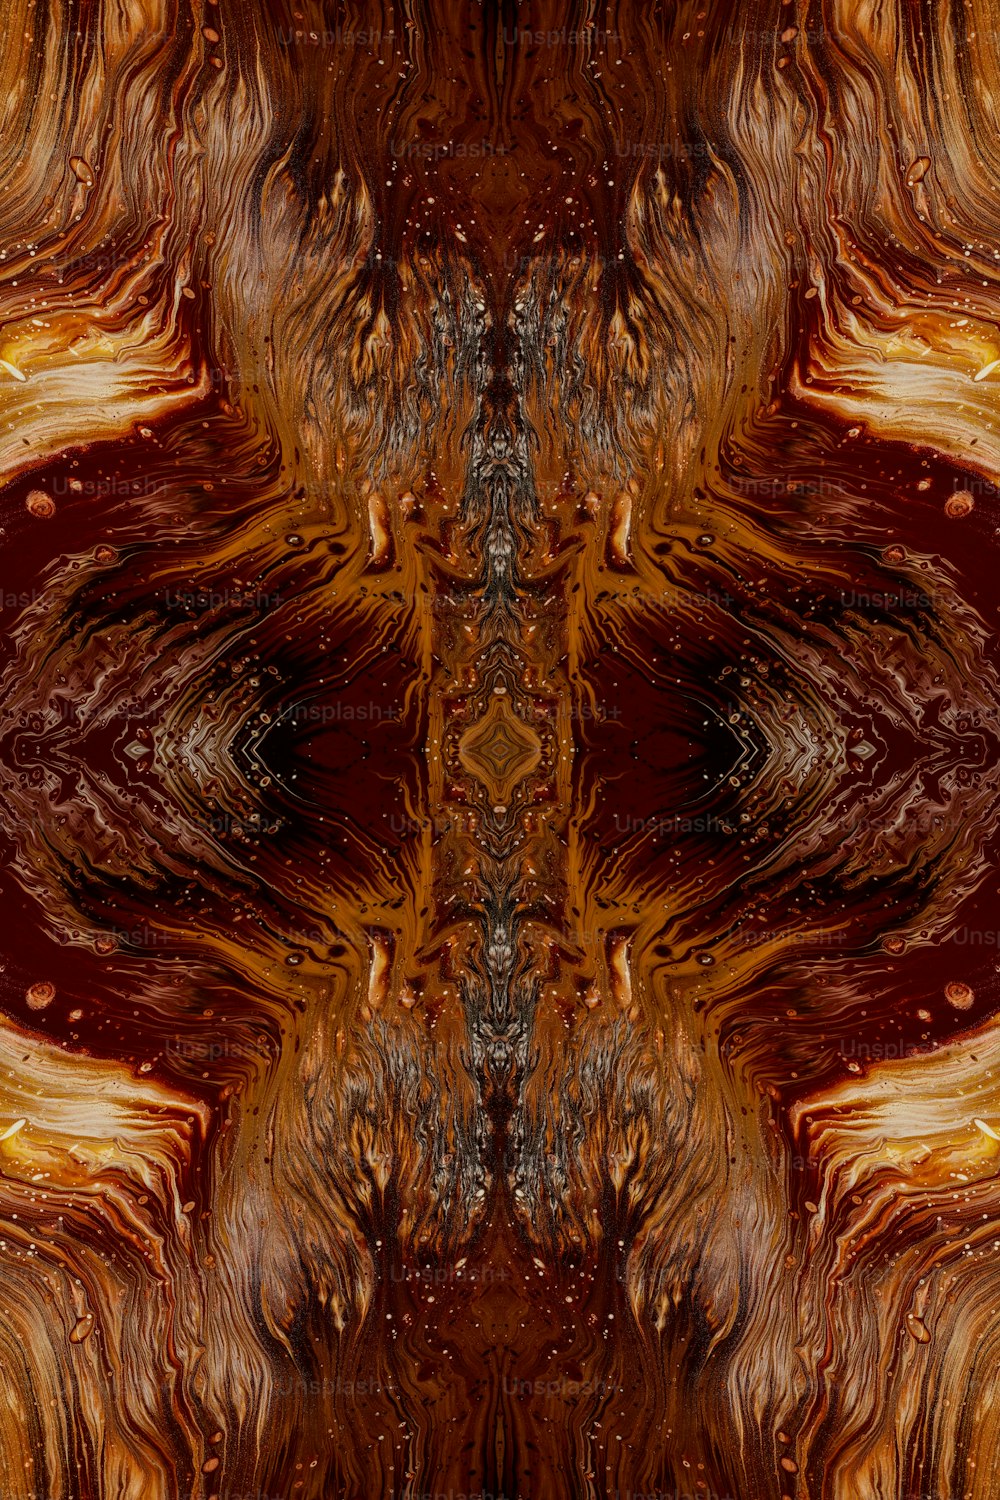 Ein abstraktes Bild eines braunen und orangefarbenen Musters